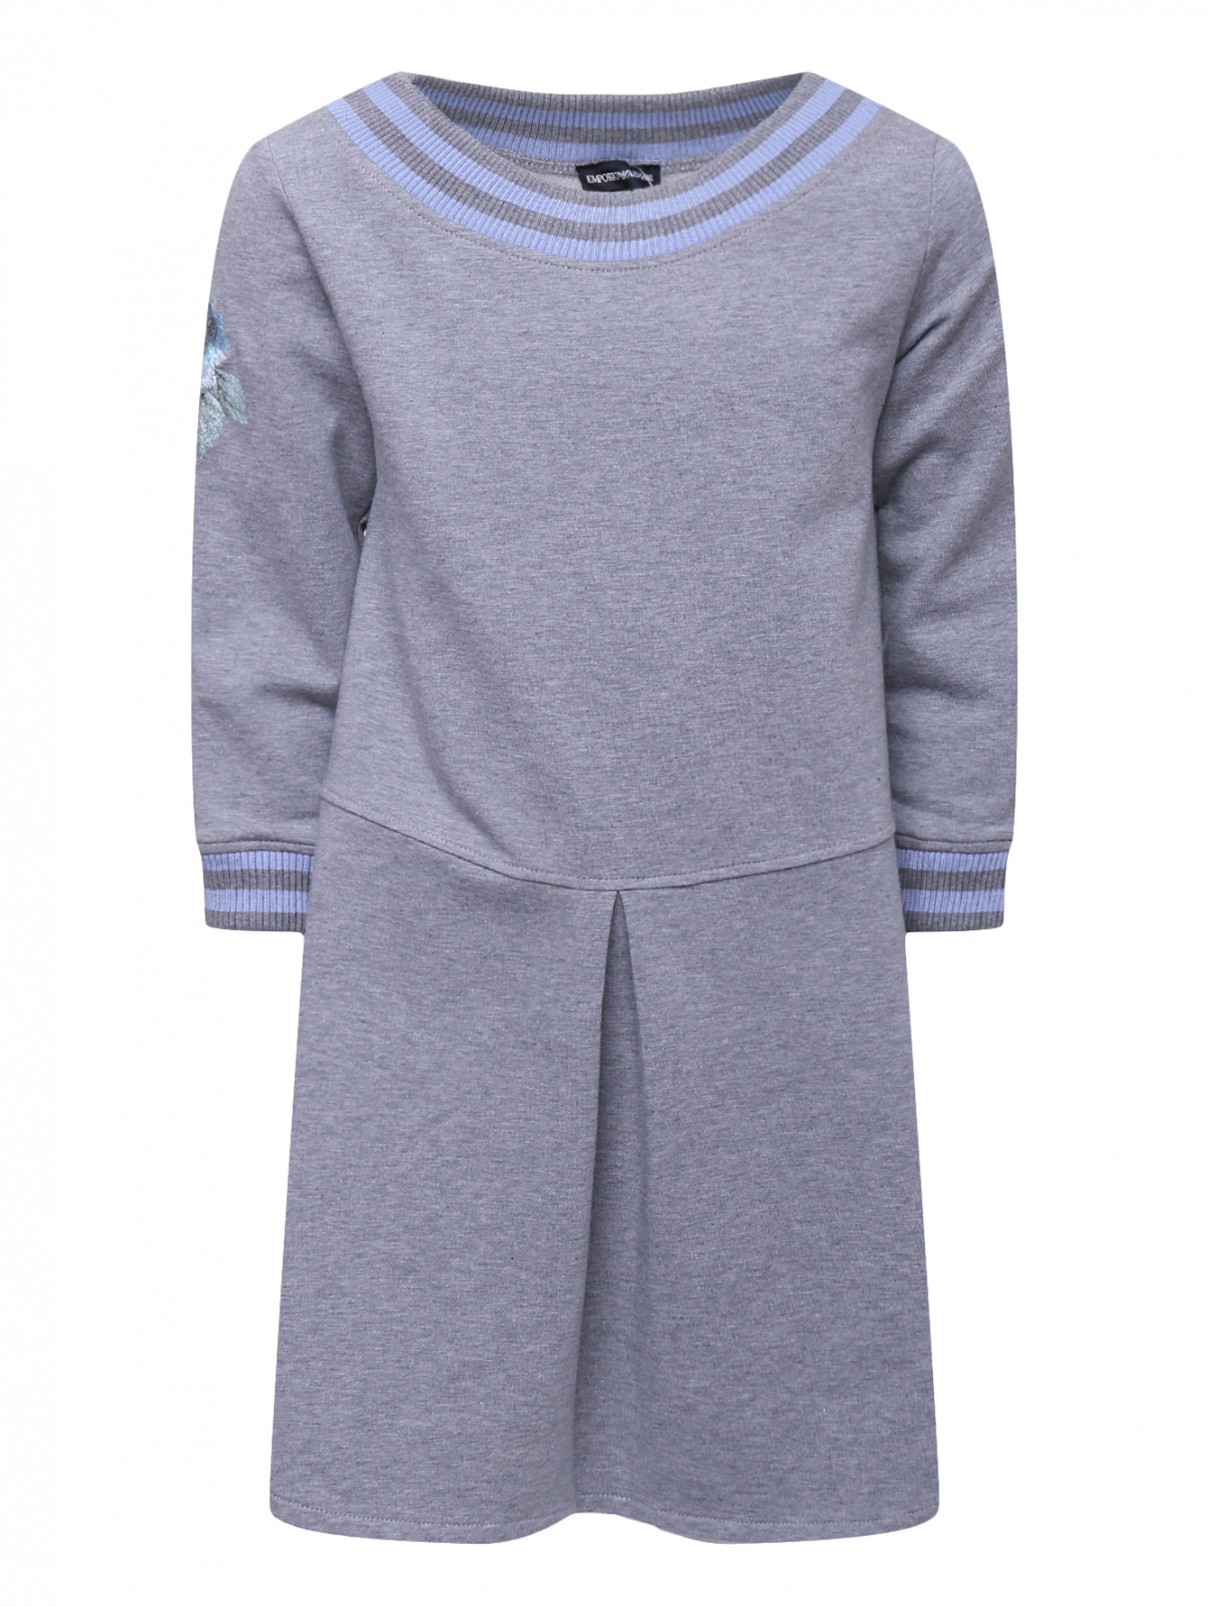 Платье трикотажное с вышивкой Armani Junior  –  Общий вид  – Цвет:  Серый